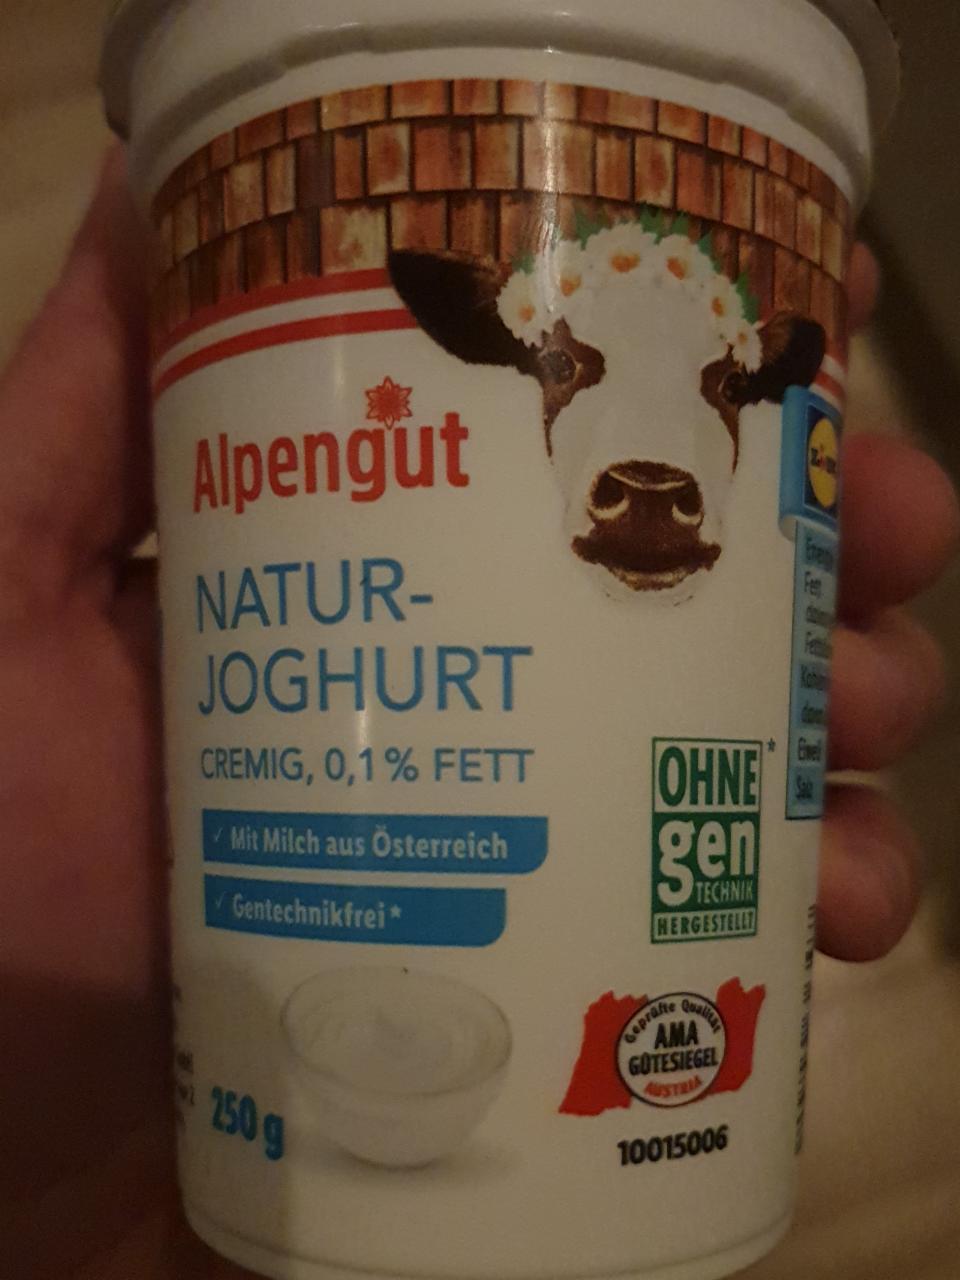 Fotografie - Natur Joghurt Alpengut 0.1% fett